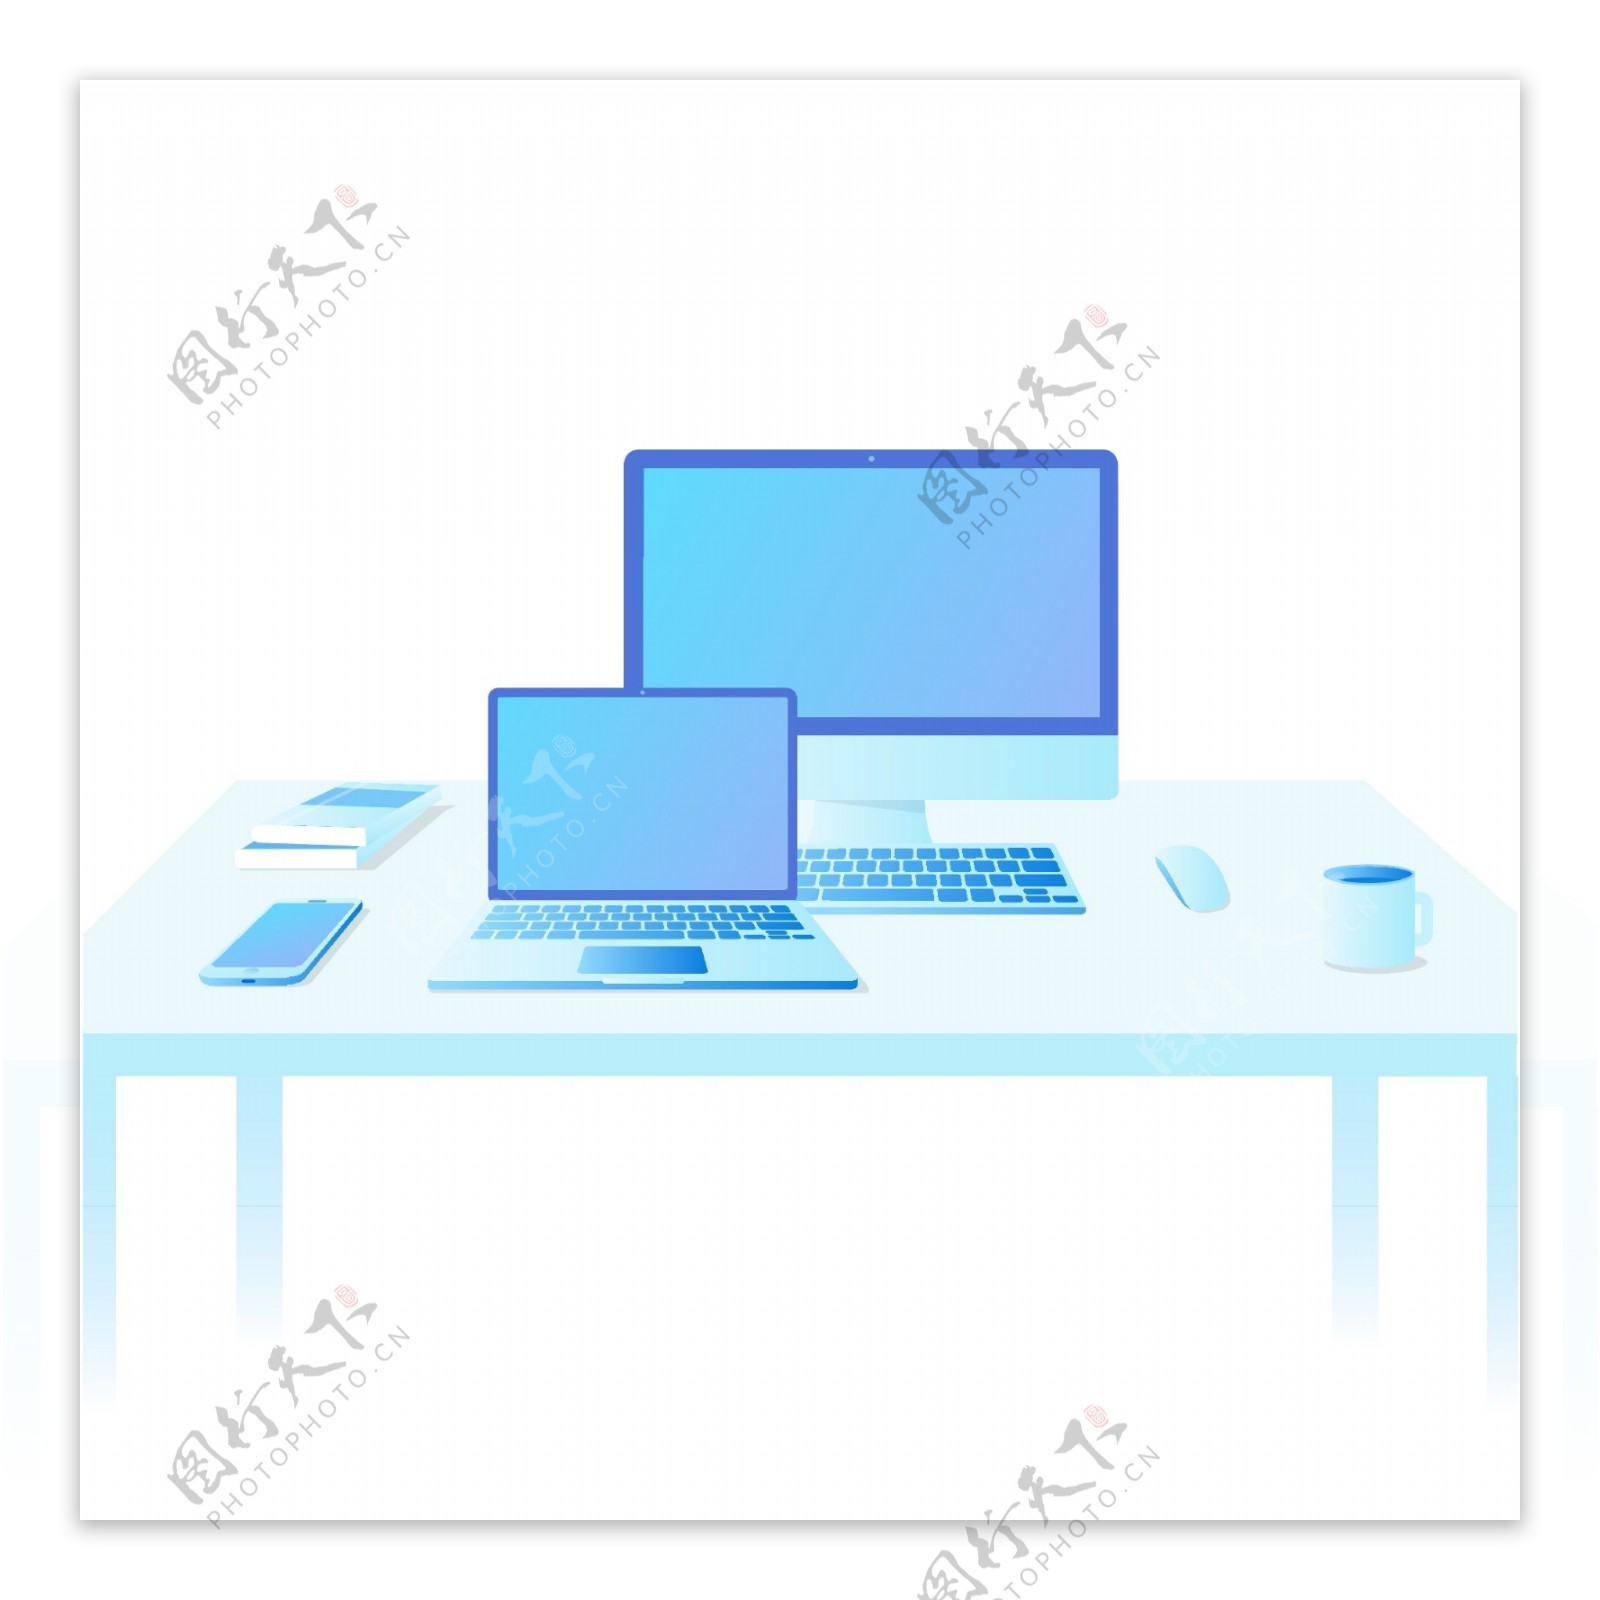 2.5D苹果设备办公场景笔记本电脑办公桌正视图